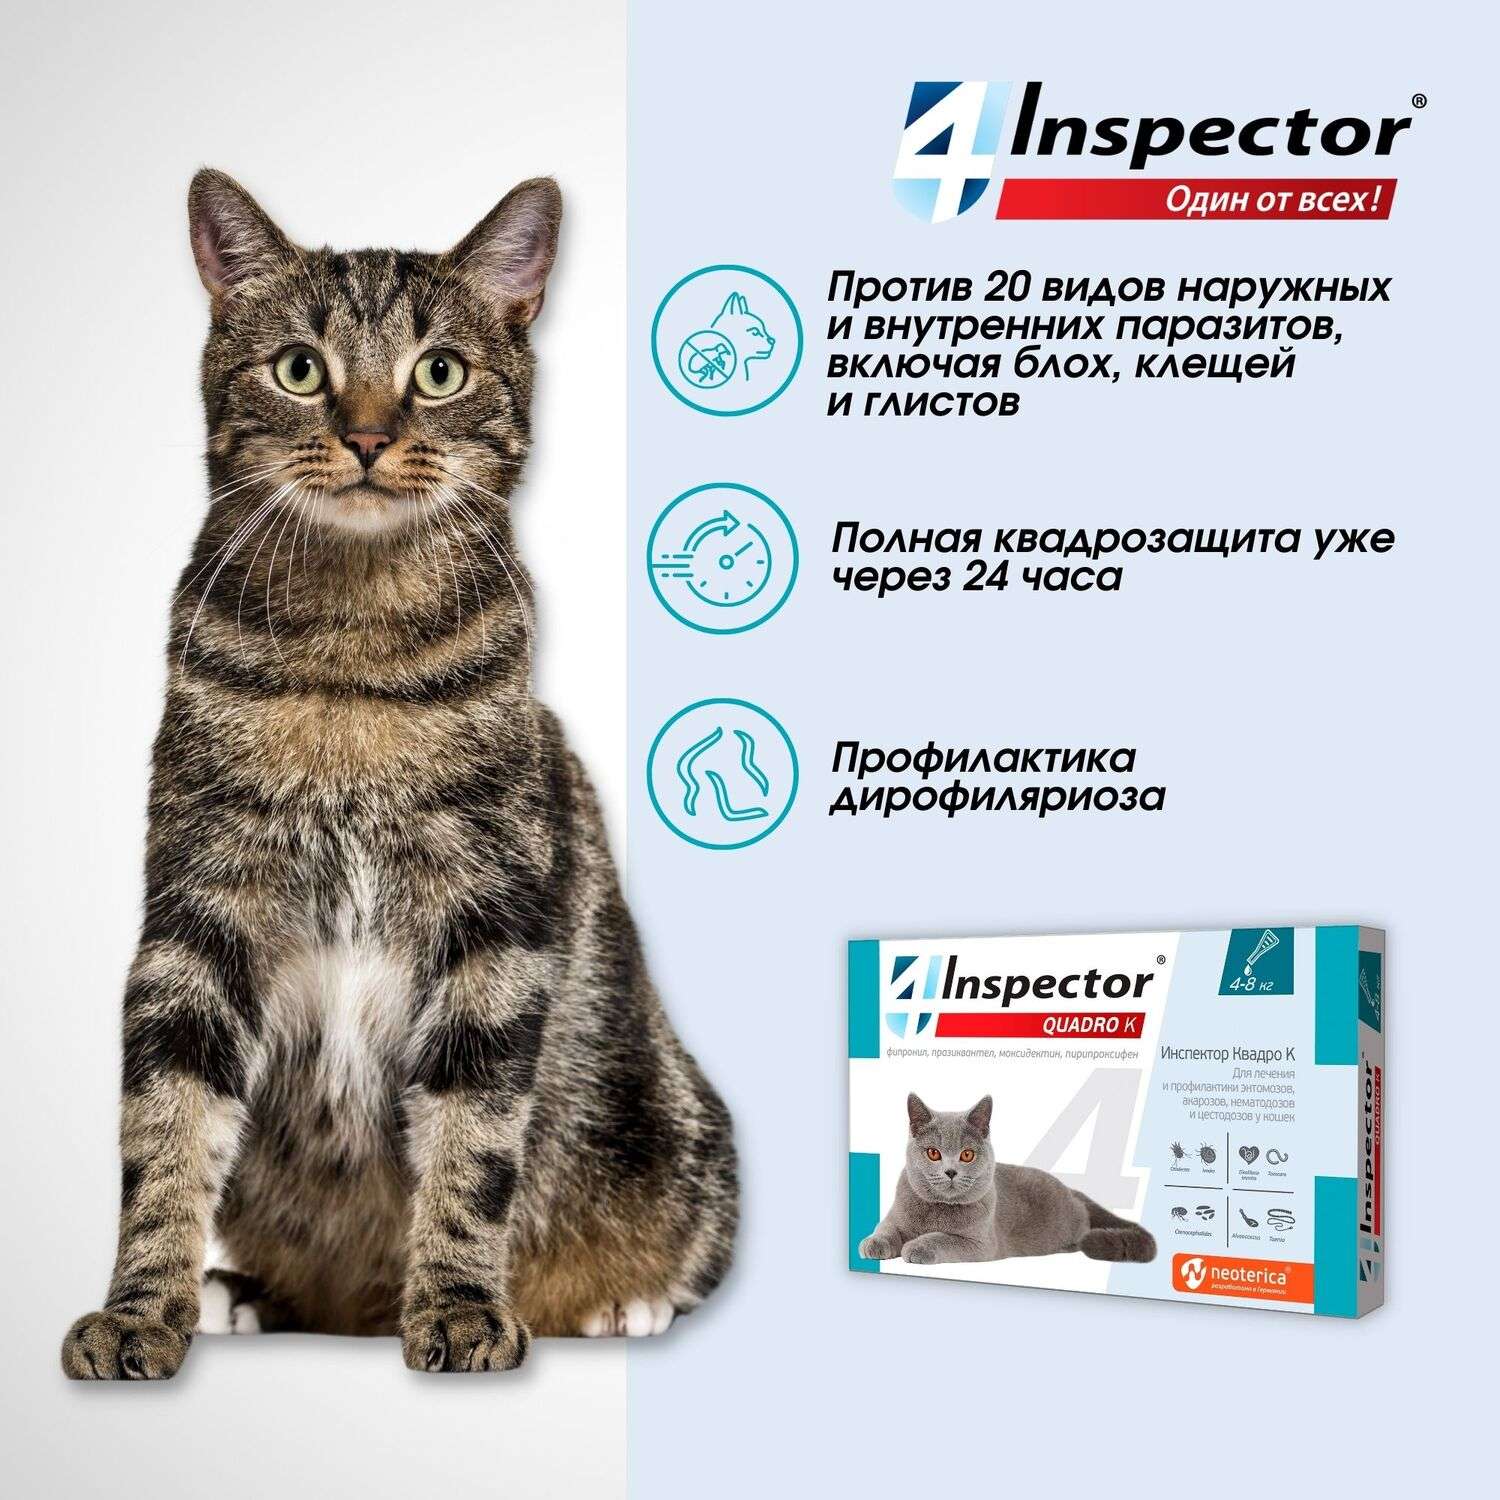 Капли инспектор для кошек инструкция по применению. Капли для кошек "Inspector Quadro" 1-4 кг от блох. Инспектор Квадро капли от паразитов для кошек 4-8кг. Инспектор Квадро к для кошек. Инспектор Квадро к для кошек 4-8 кг.